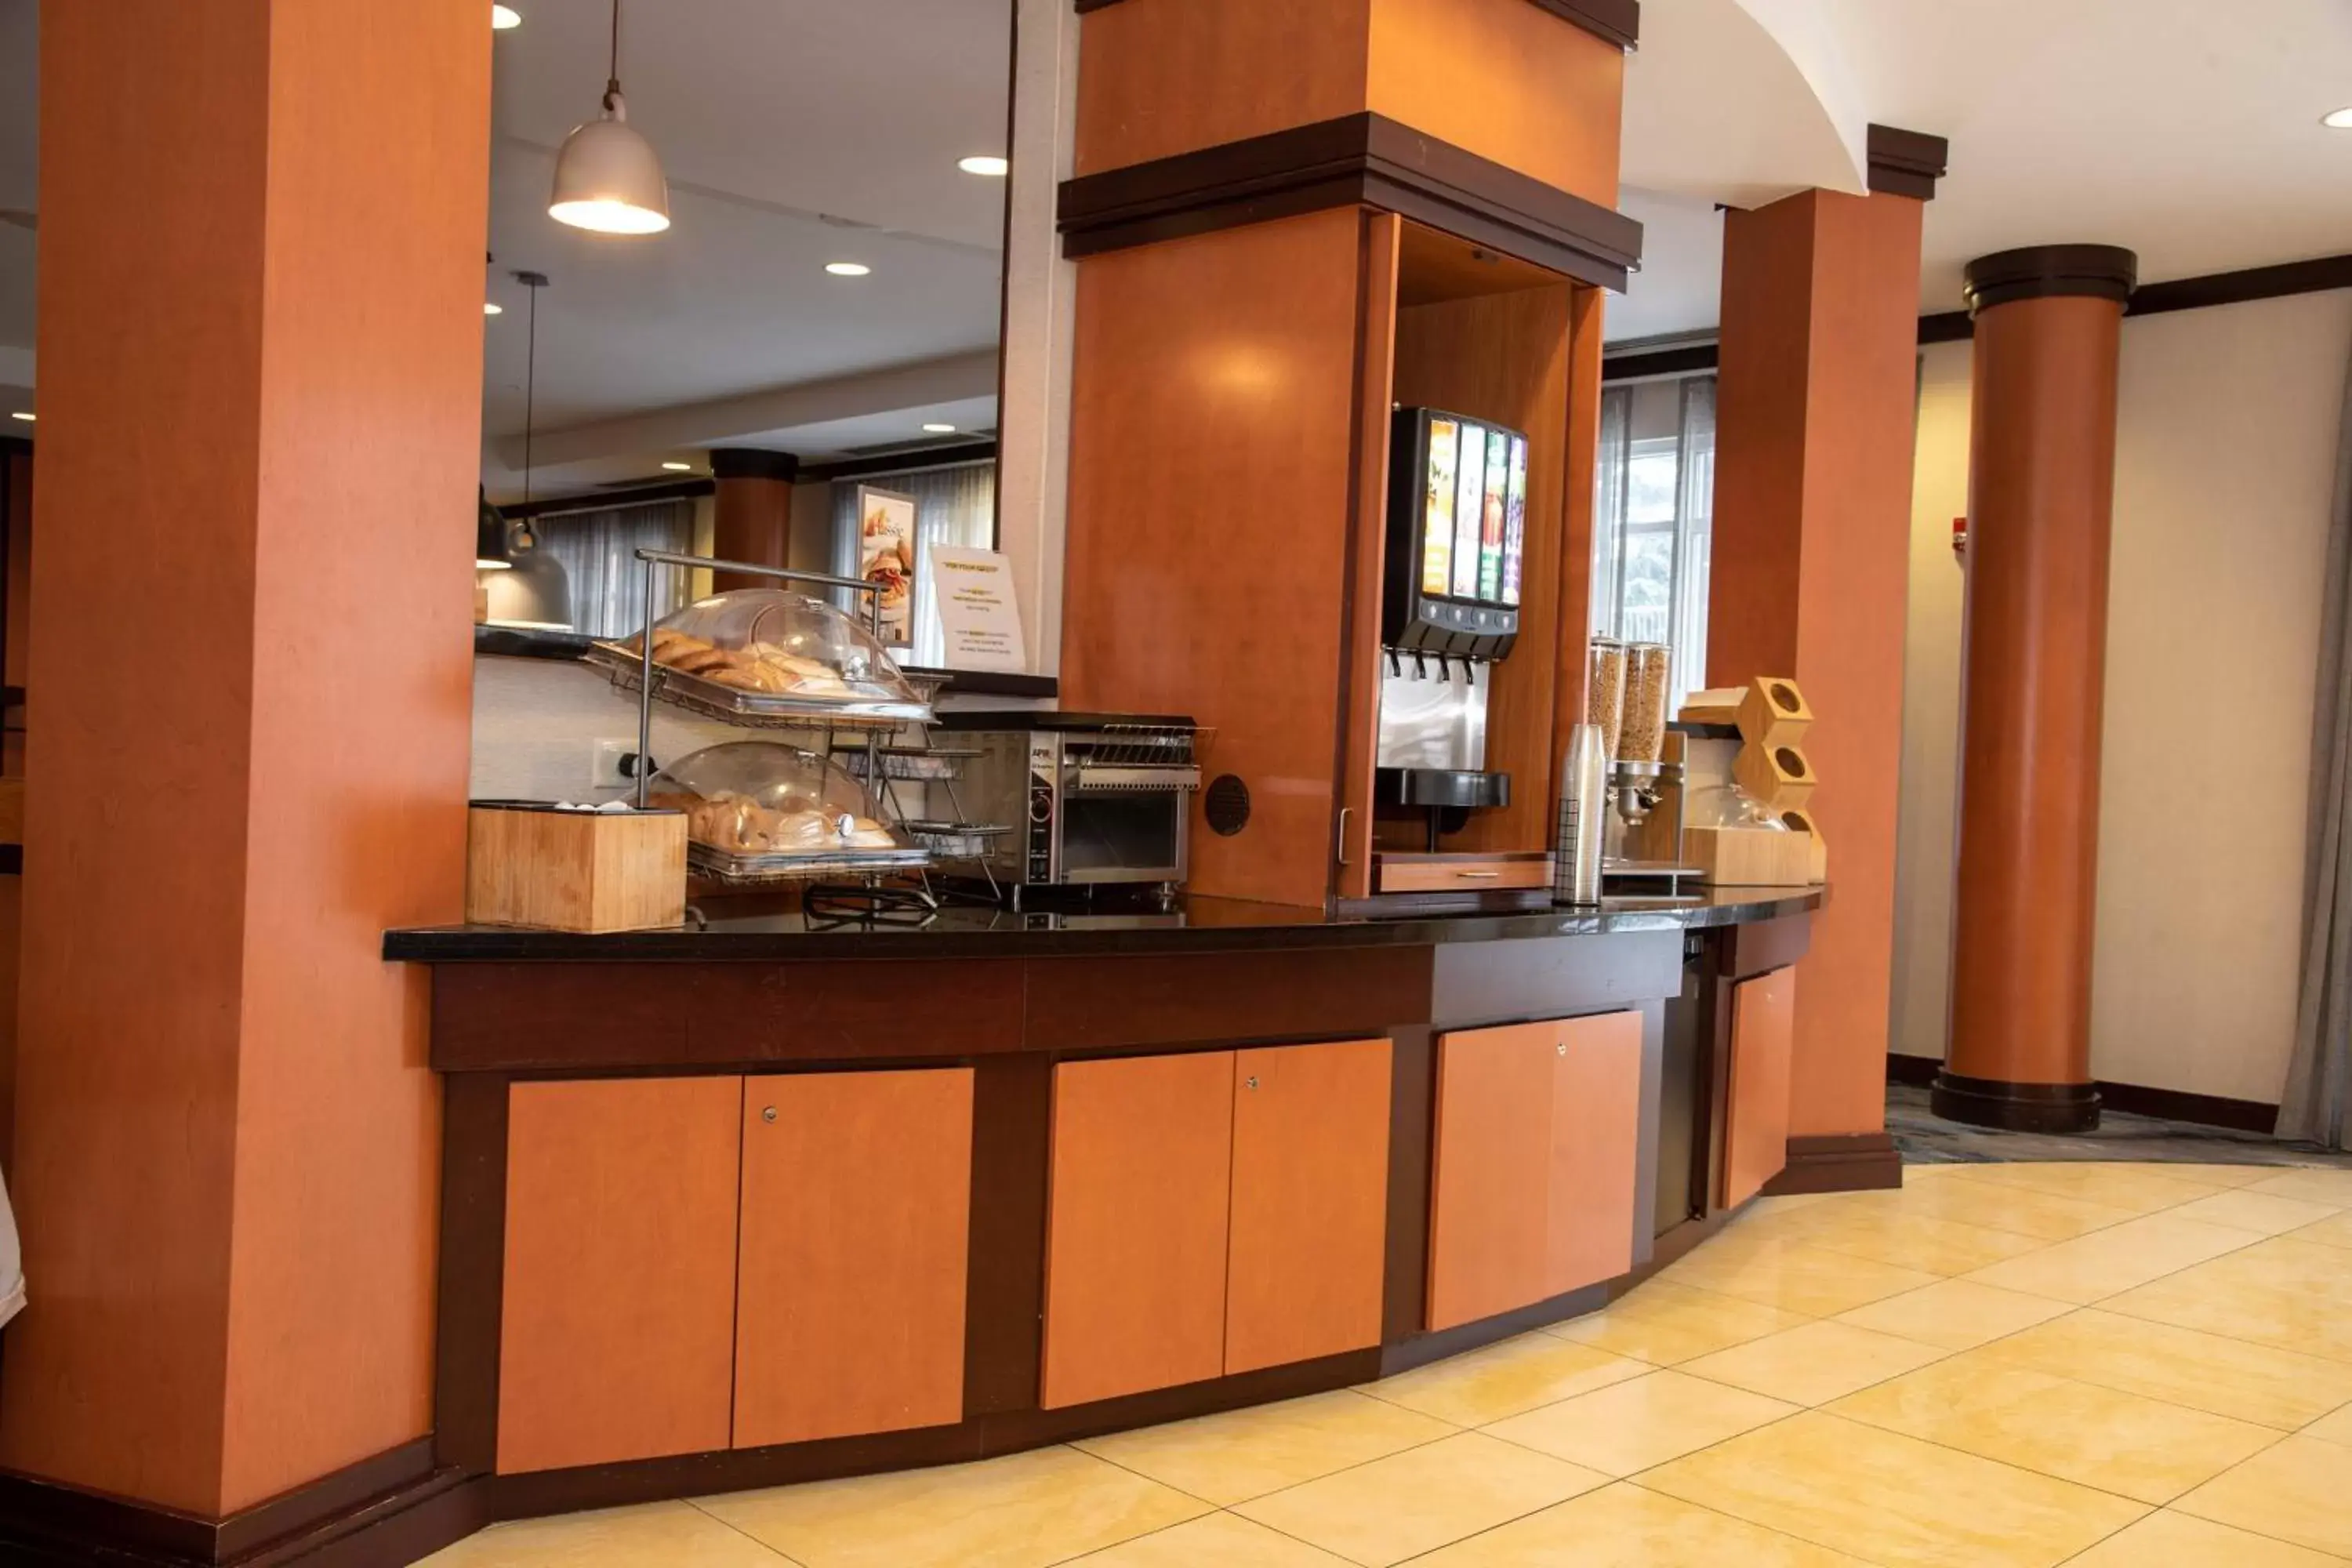 Breakfast, Lobby/Reception in Fairfield Inn & Suites Lewisburg